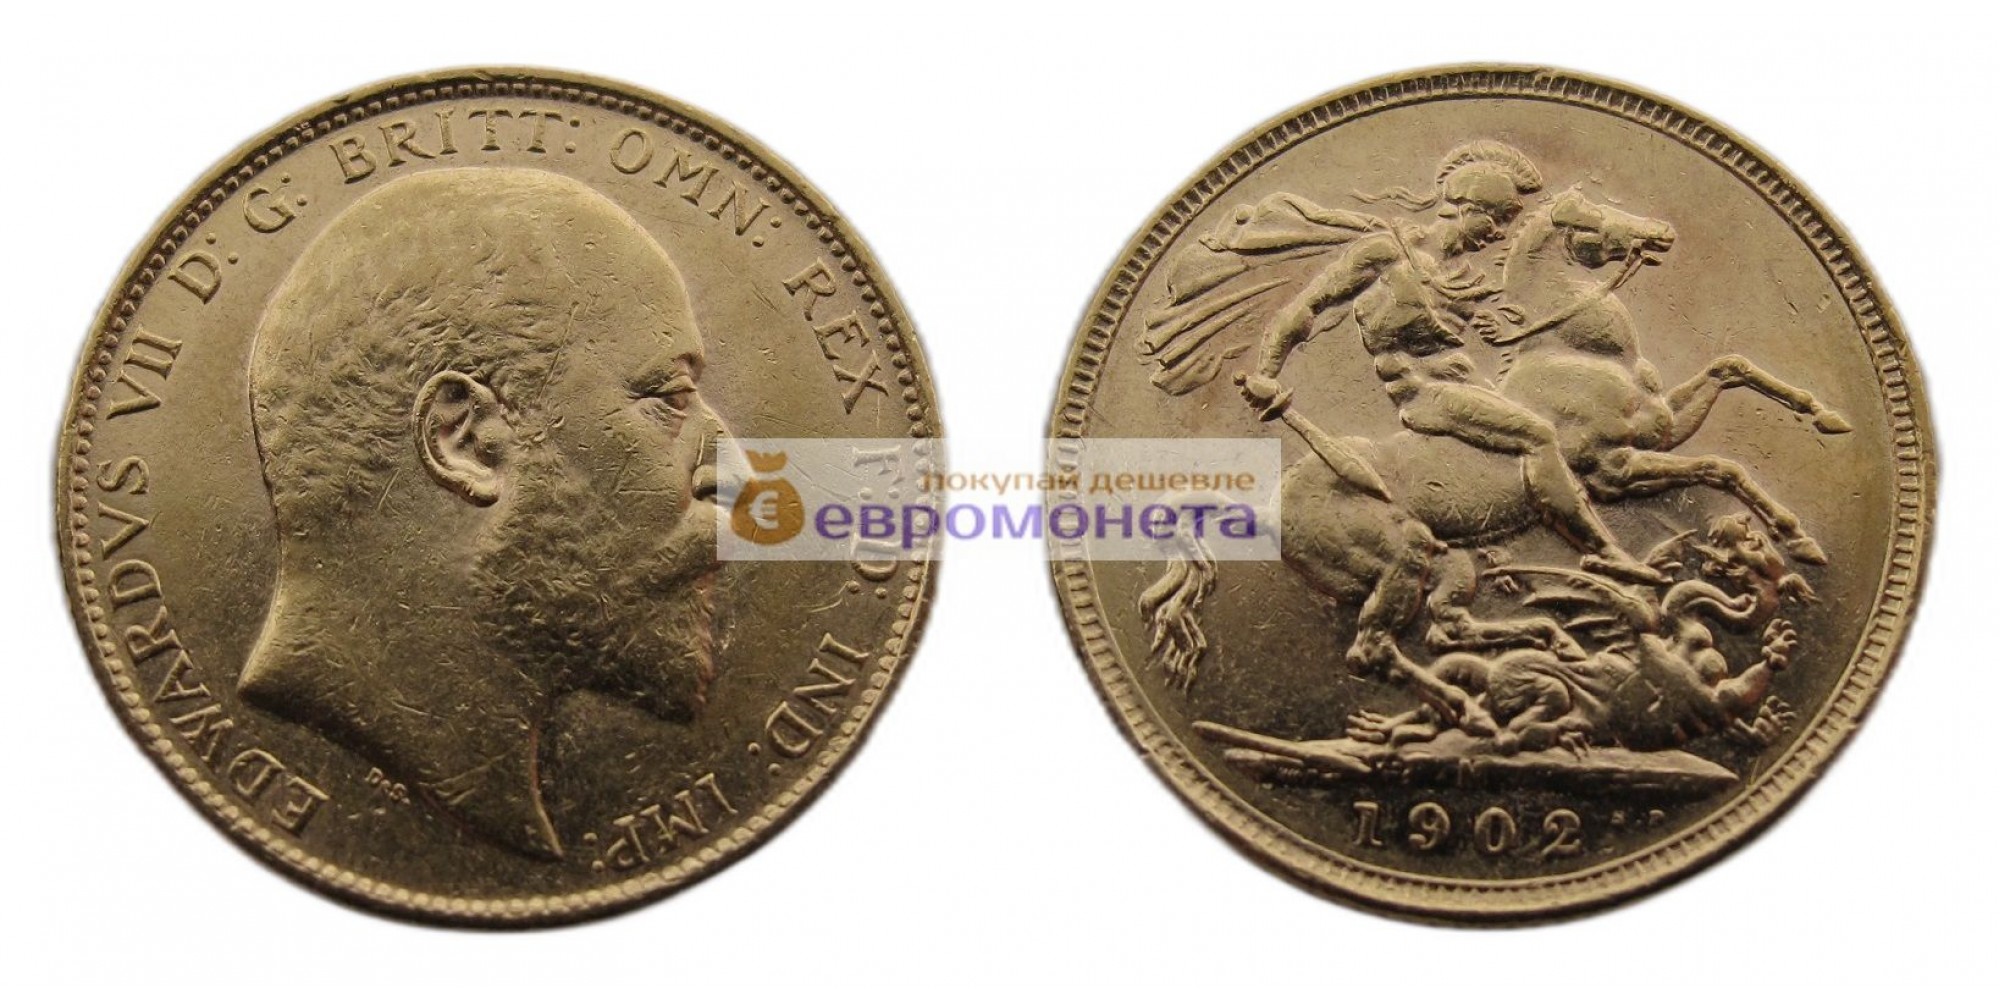 Австралия 1 соверен 1902 год. Король Эдуард VII. Отметка монетного двора "M" - Мельбурн. Золото.